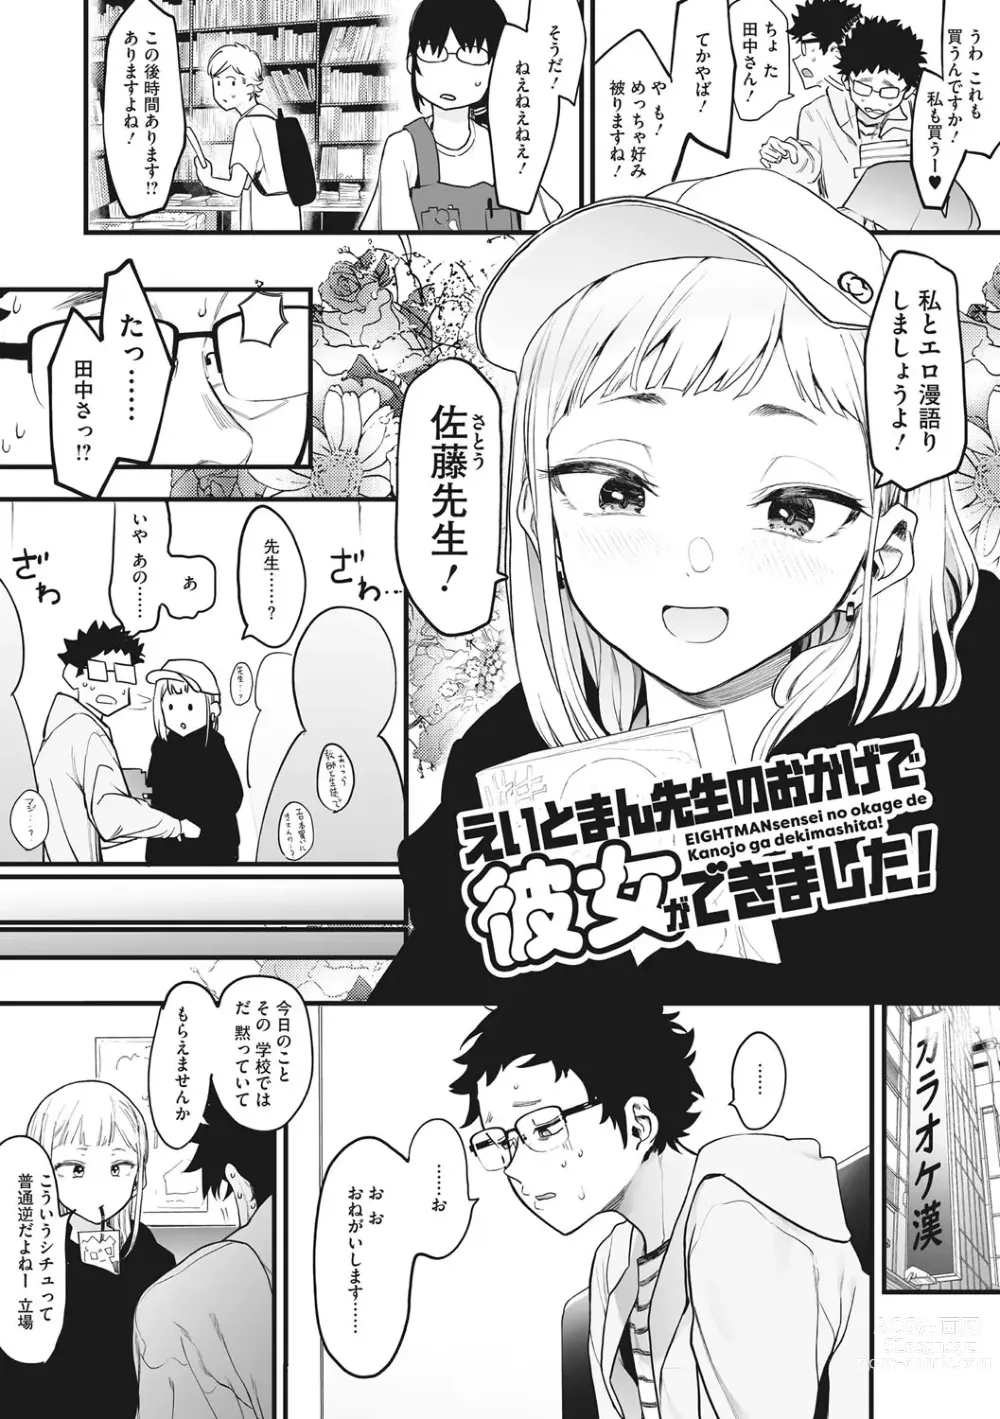 Page 5 of manga Eightman sensei no okagede kanojo ga dekimashita!